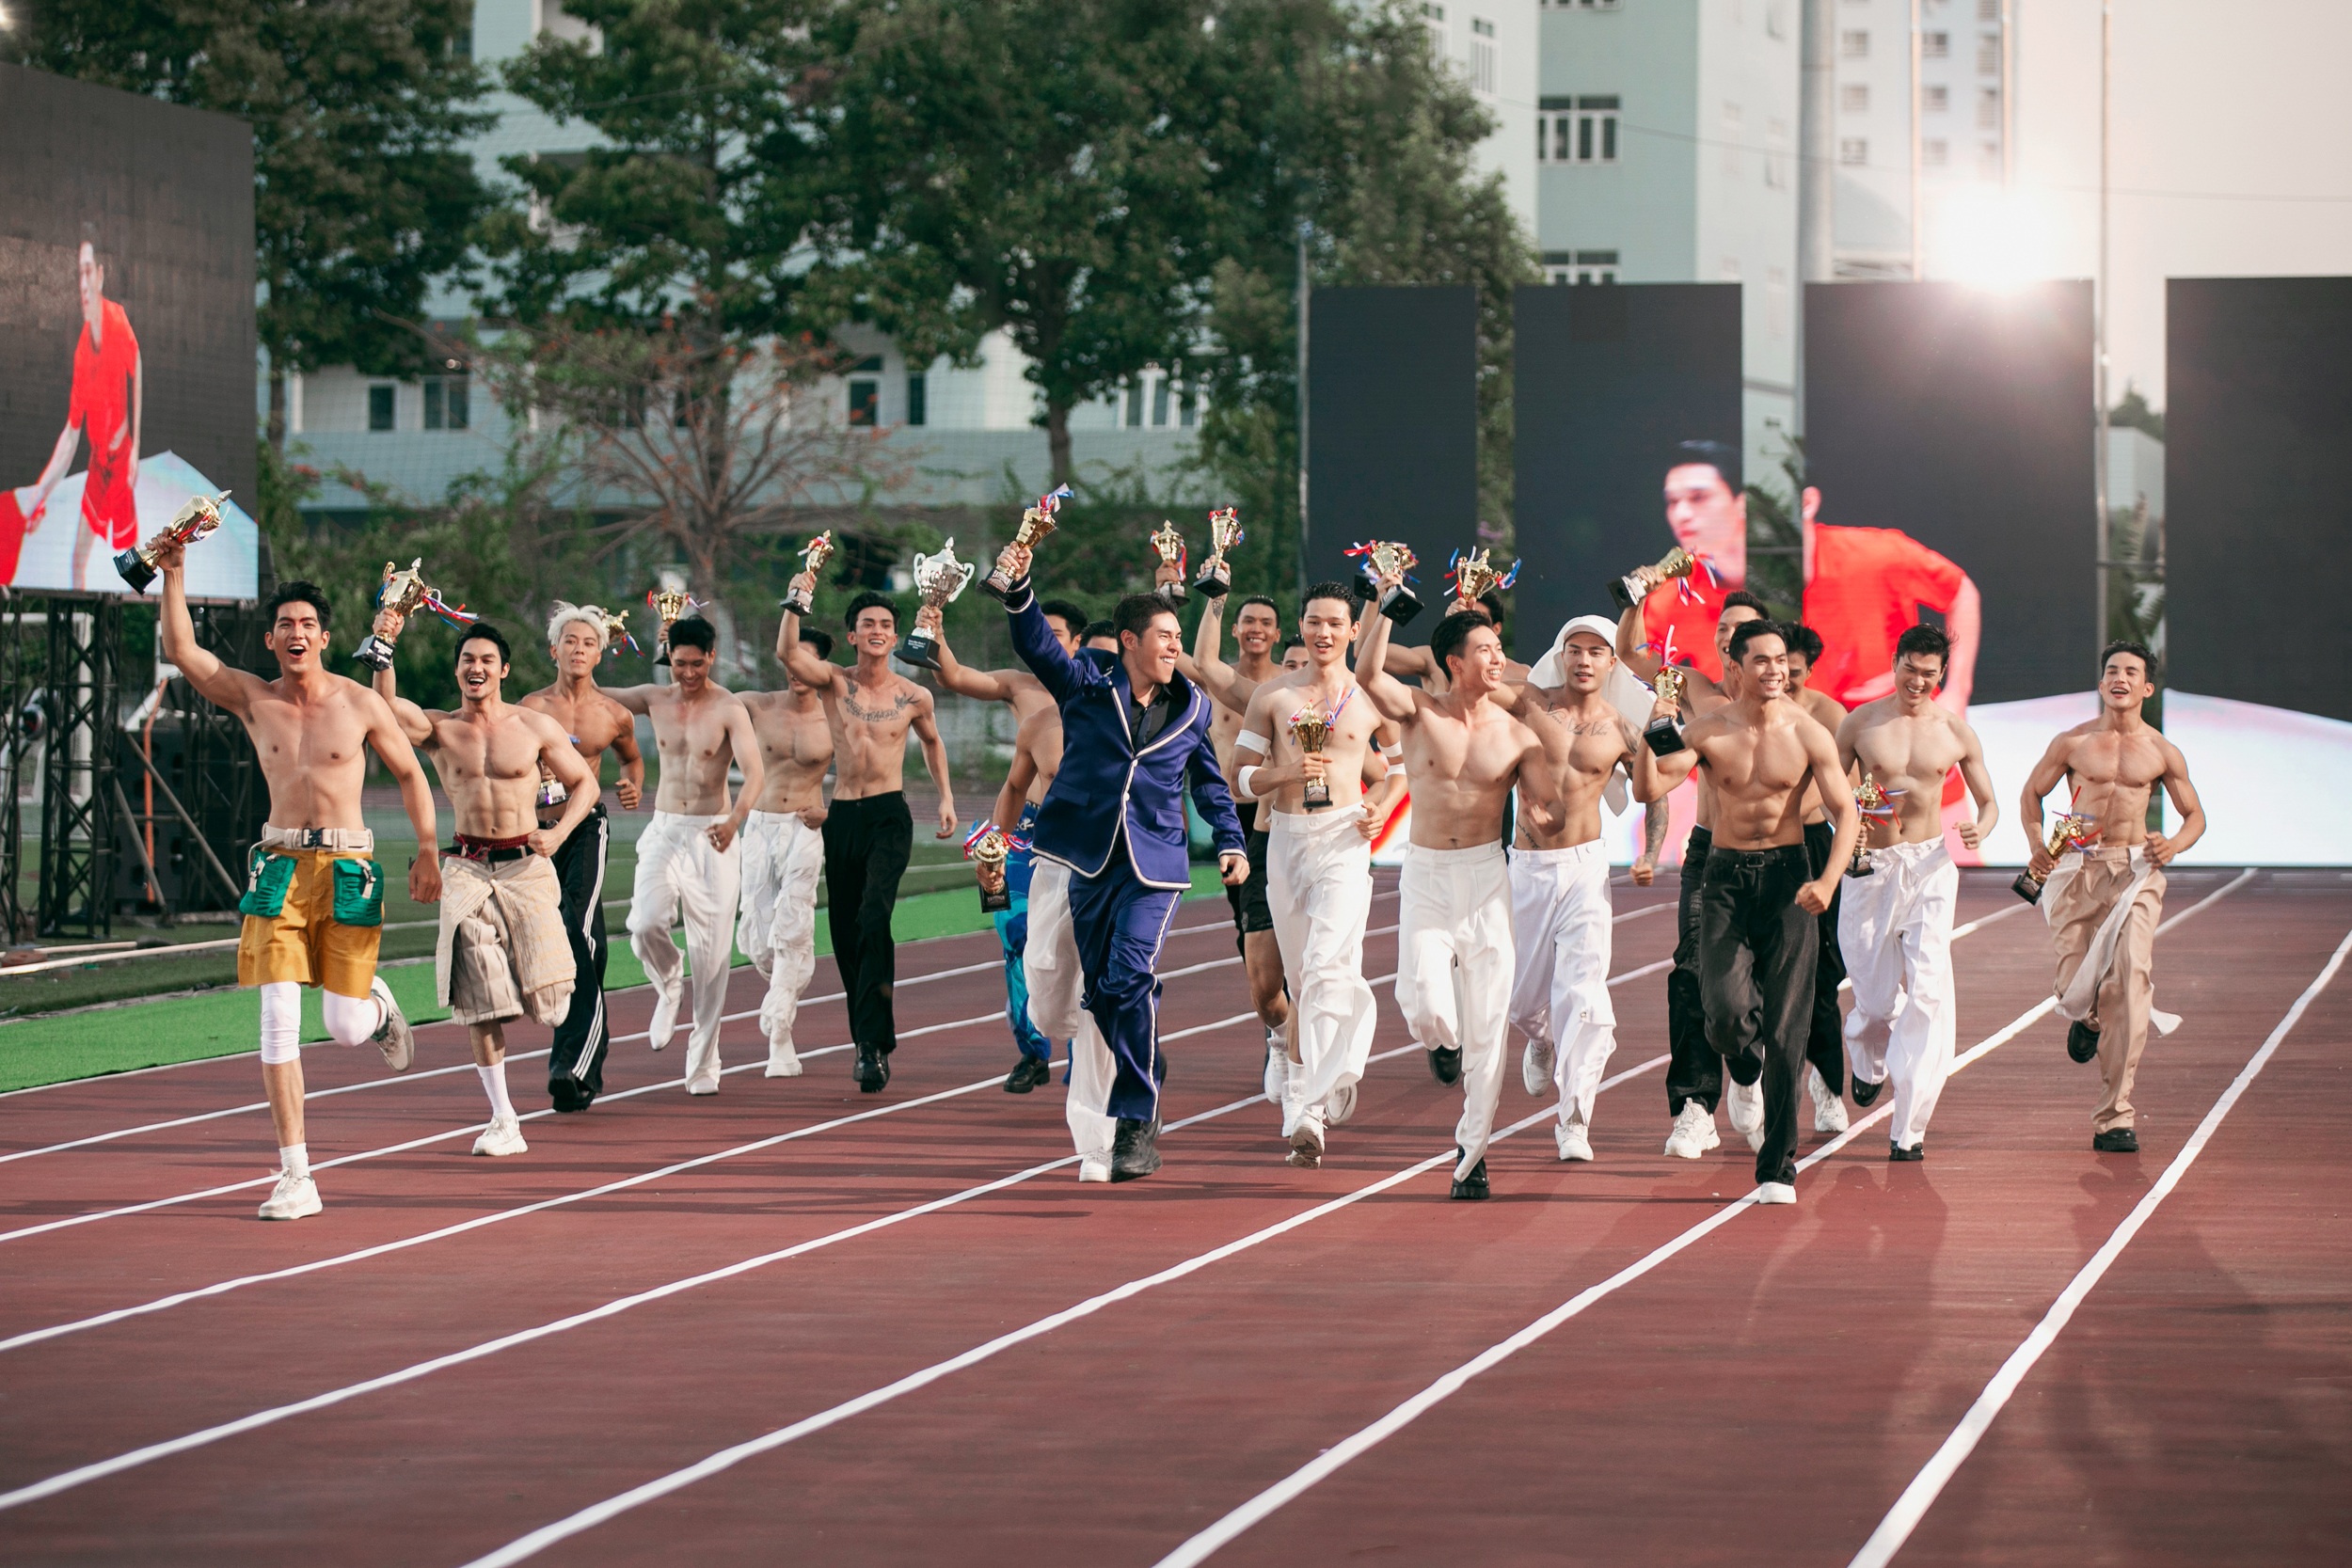 Kết thúc chương trình, đạo diễn Nguyễn Hưng Phúc cùng dàn người mẫu nam chạy vòng quanh sân vận động chào khán giả (Ảnh: Kiếng Cận Team).